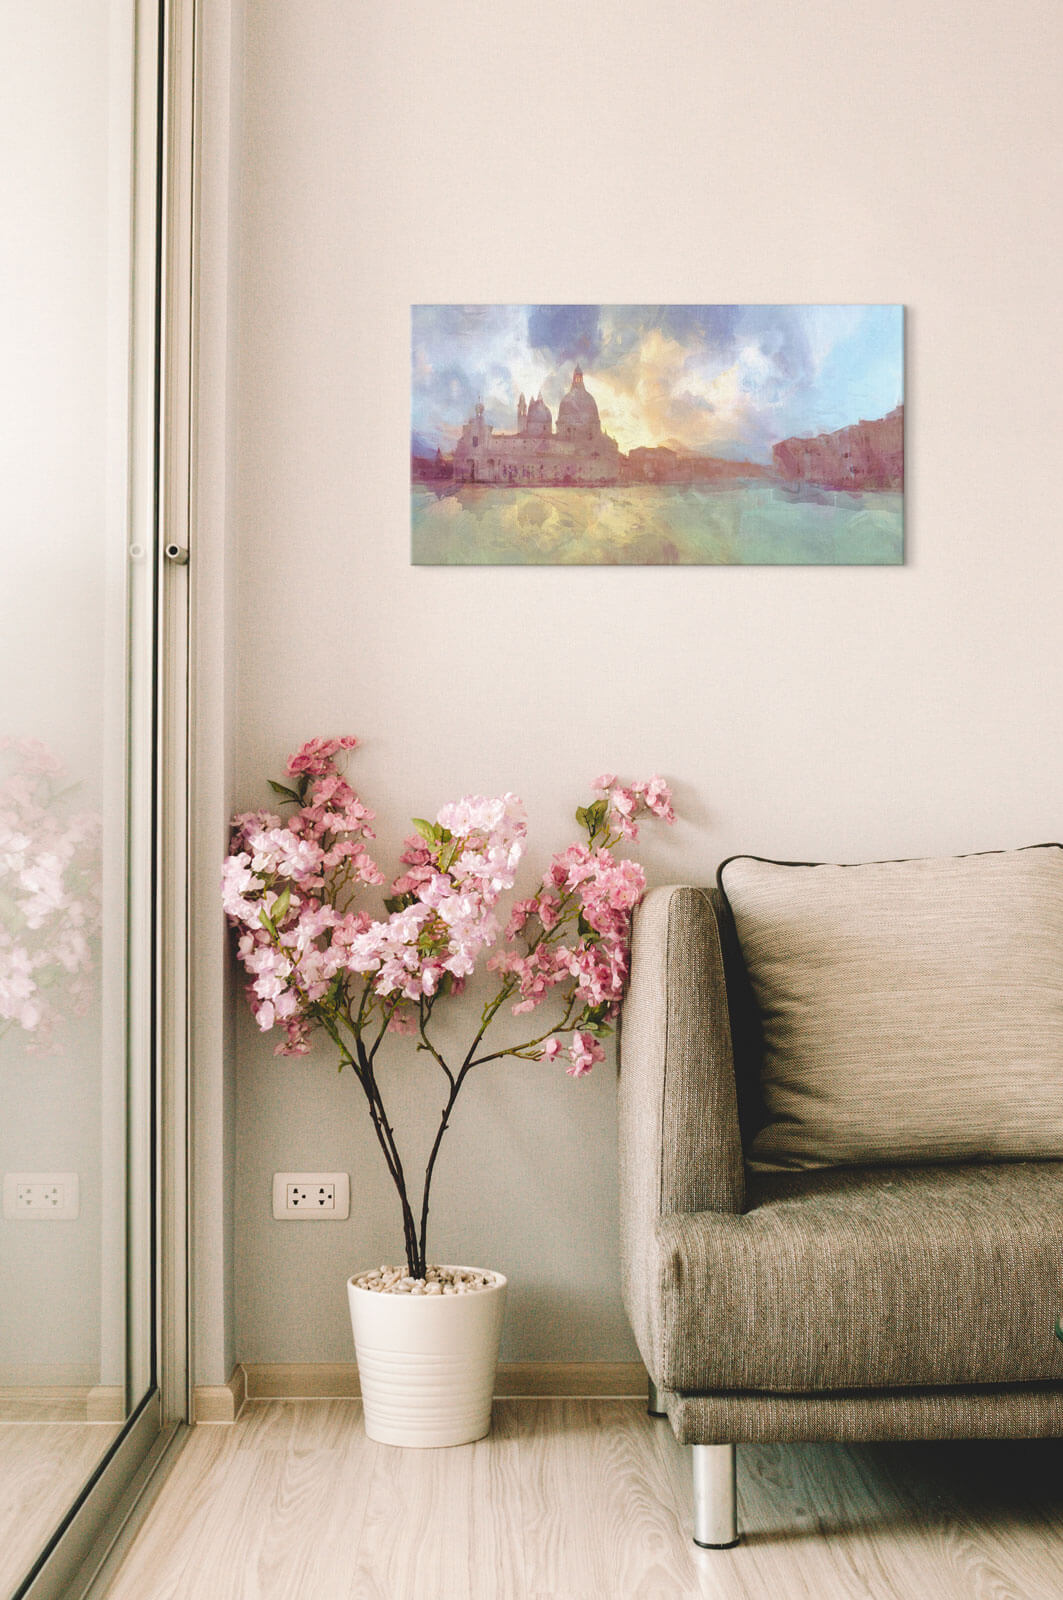 Obraz Wenecji we mgle powieszony w salonie nad różowym kwiatkiem